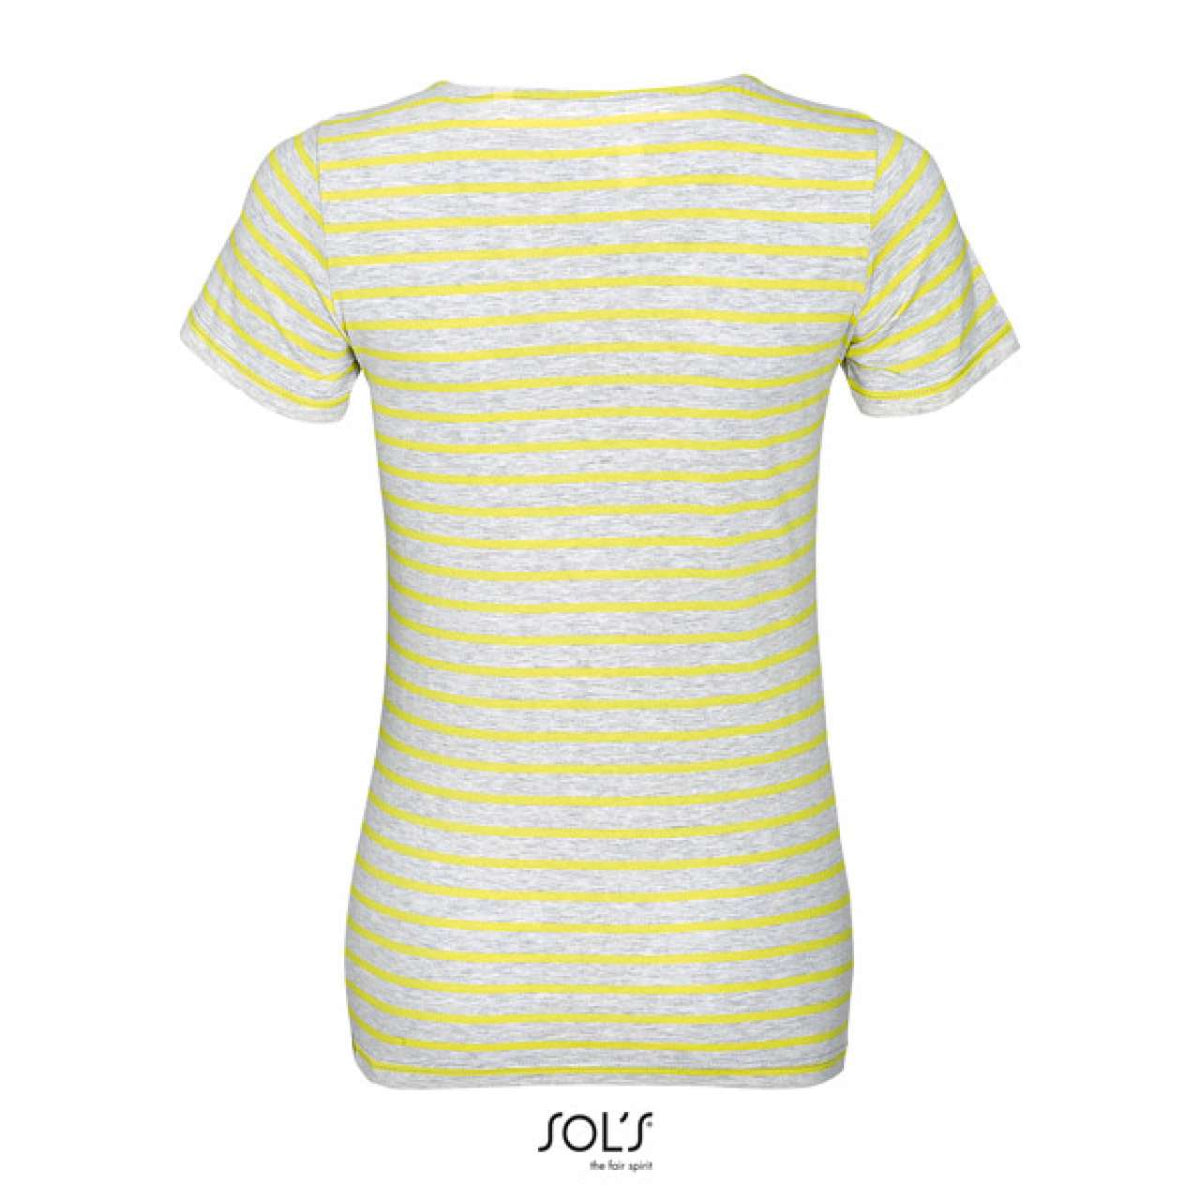 SOL'S Damen T-Shirt Round Neck Striped Kurzarm Baumwolle Basic